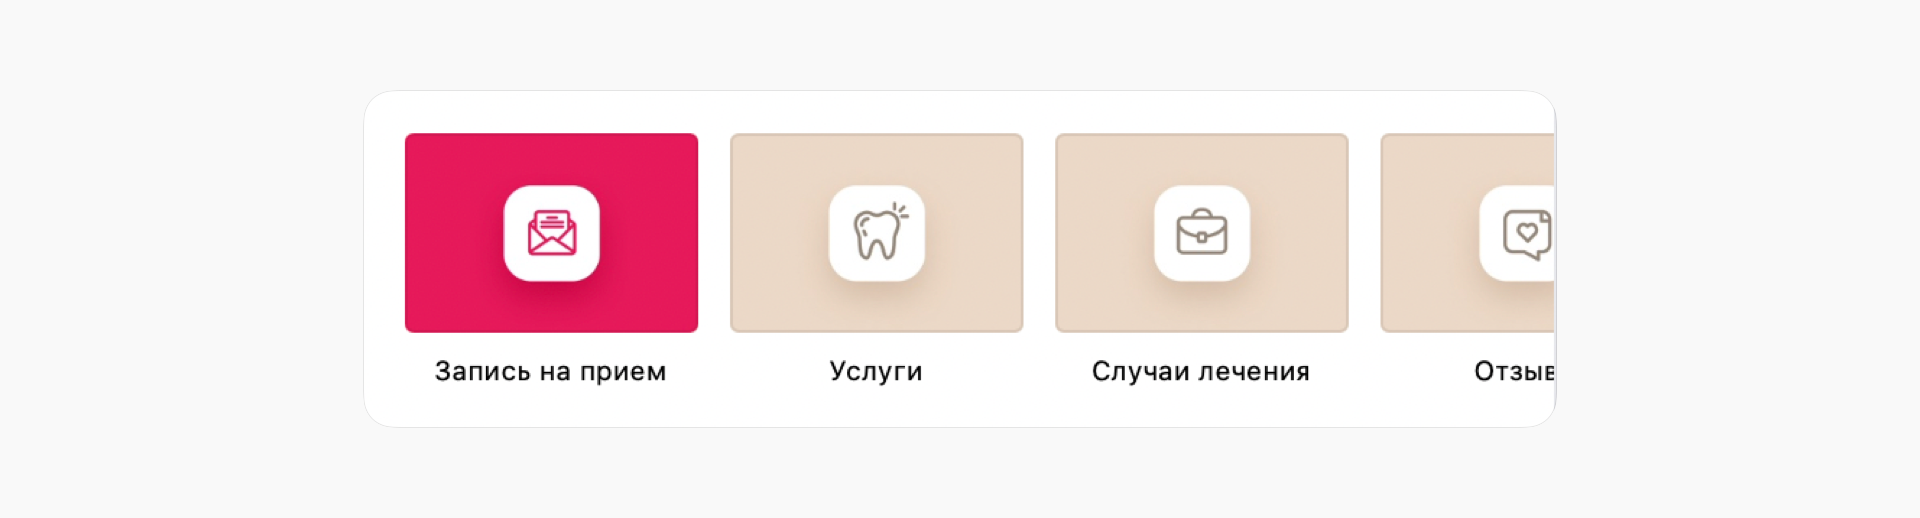 Меню группы ВКонтакте